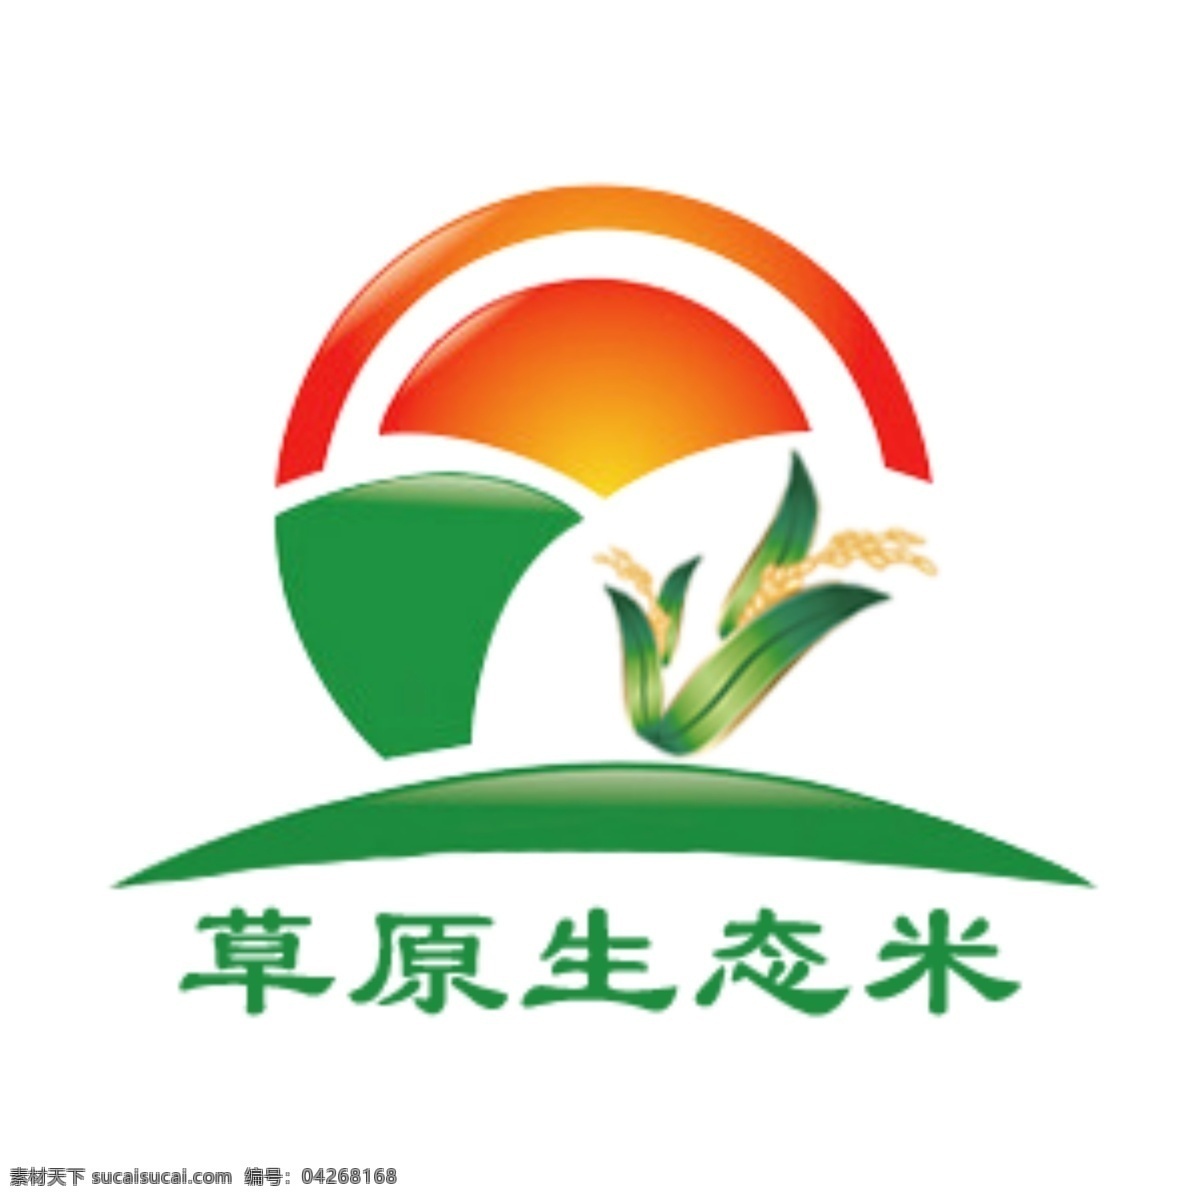 草原 生态 米 logo 生态米 大米 白色